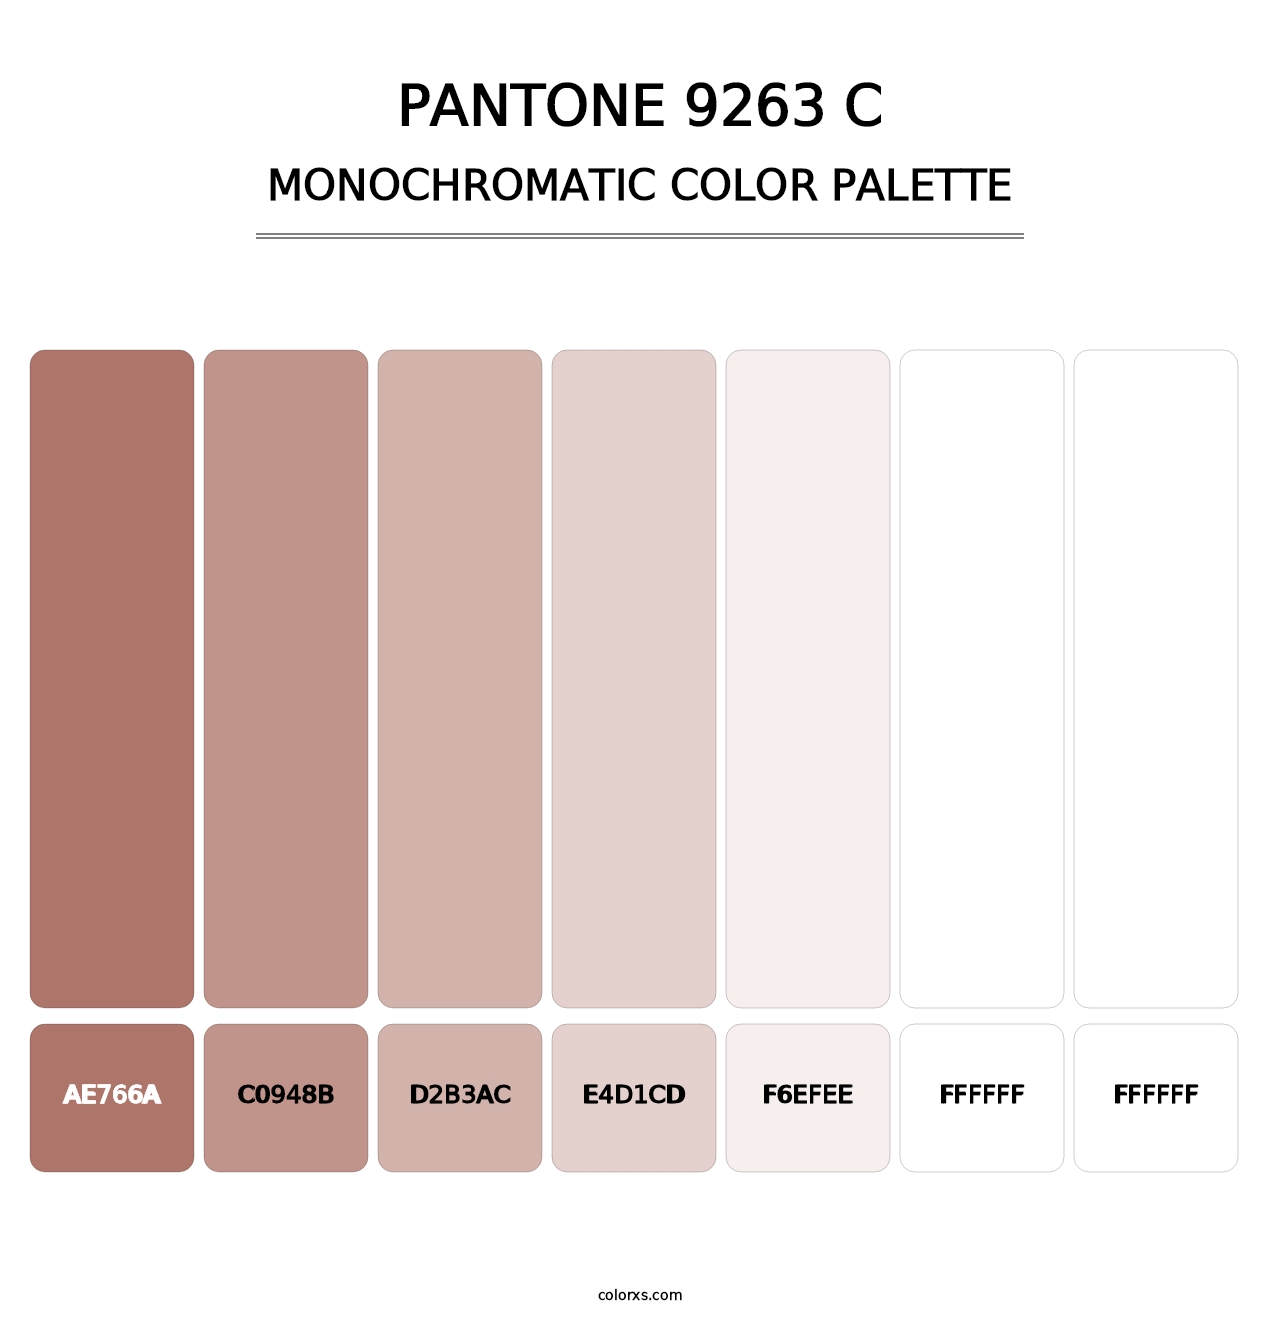 PANTONE 9263 C - Monochromatic Color Palette